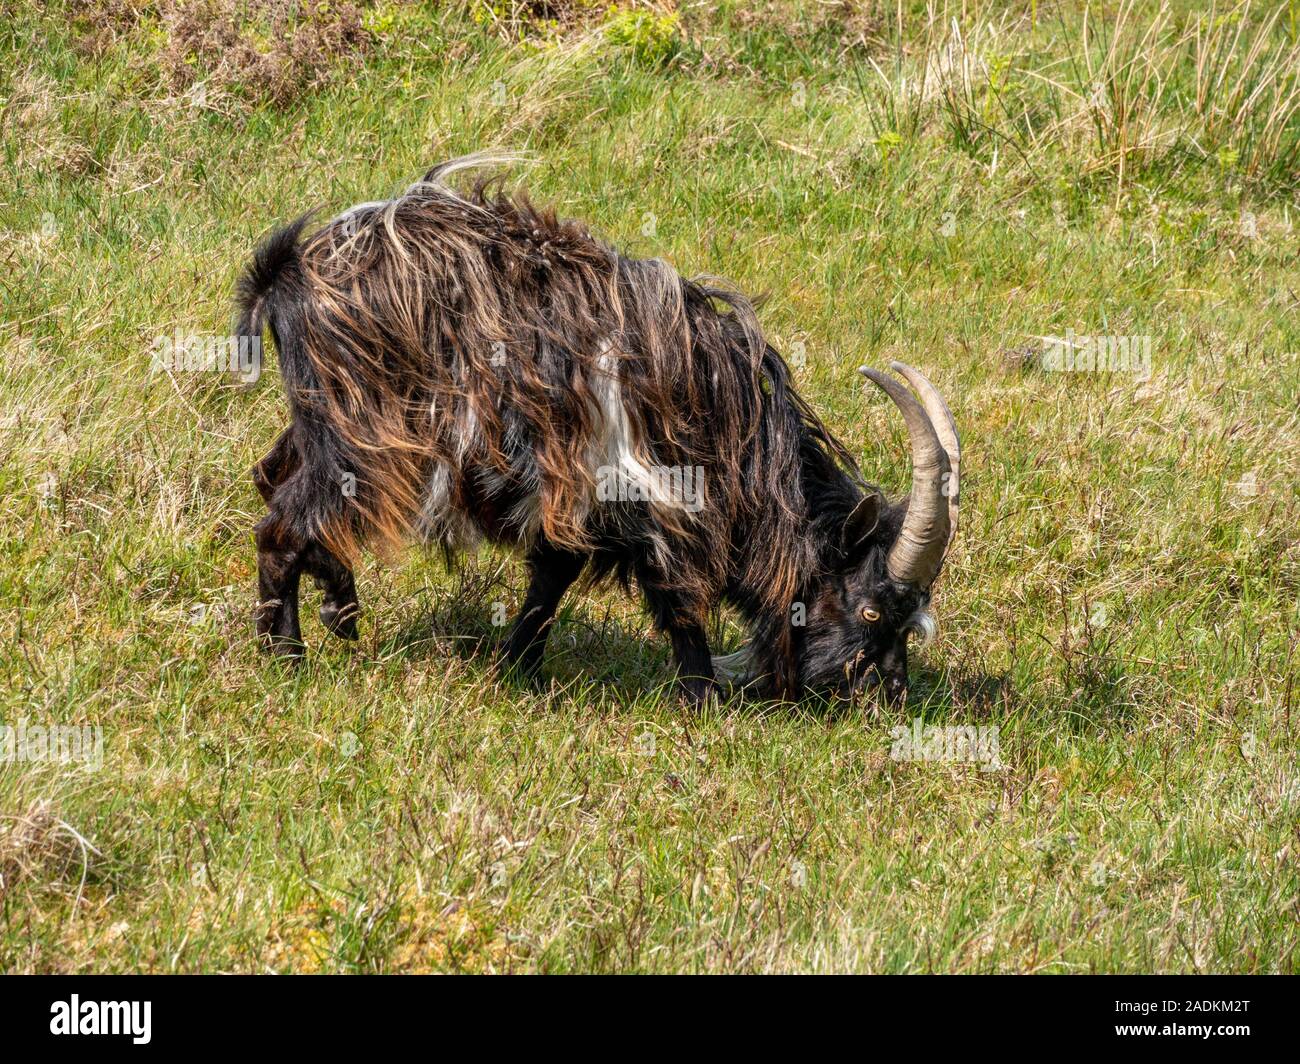 Nero / marrone capelli lunghi selvatici selvatici dalle lunghe corna di capra fissando lo sguardo sulla verde erba, Isola di Colonsay, Scotland, Regno Unito Foto Stock